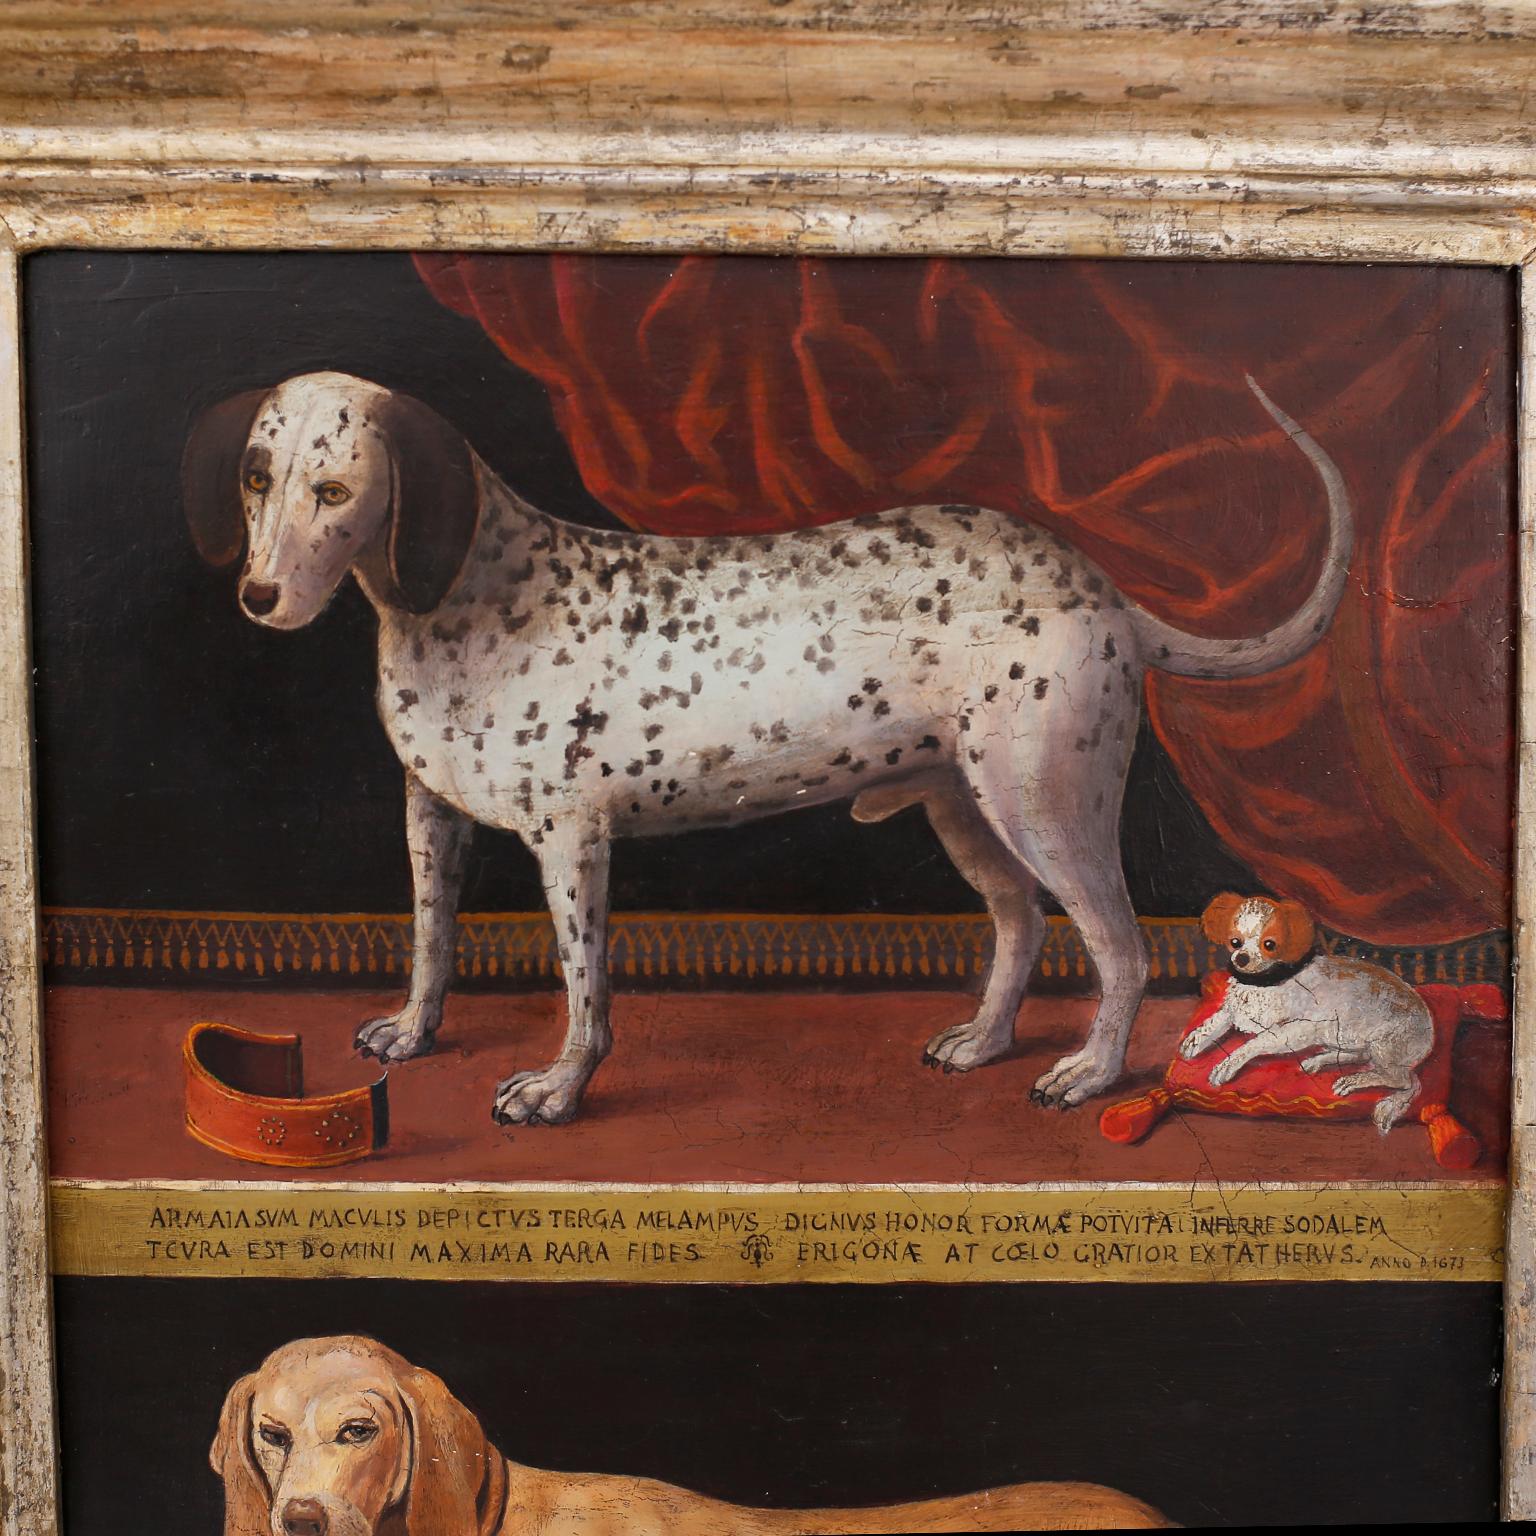 Ravissante peinture à l'huile italienne sur panneau représentant deux images distinctes de chiens, peinte sur gesso au début du 20e siècle. Exécuté dans un style Renaissance avec des descriptions en latin. Présenté dans un cadre du XVIIIe siècle en